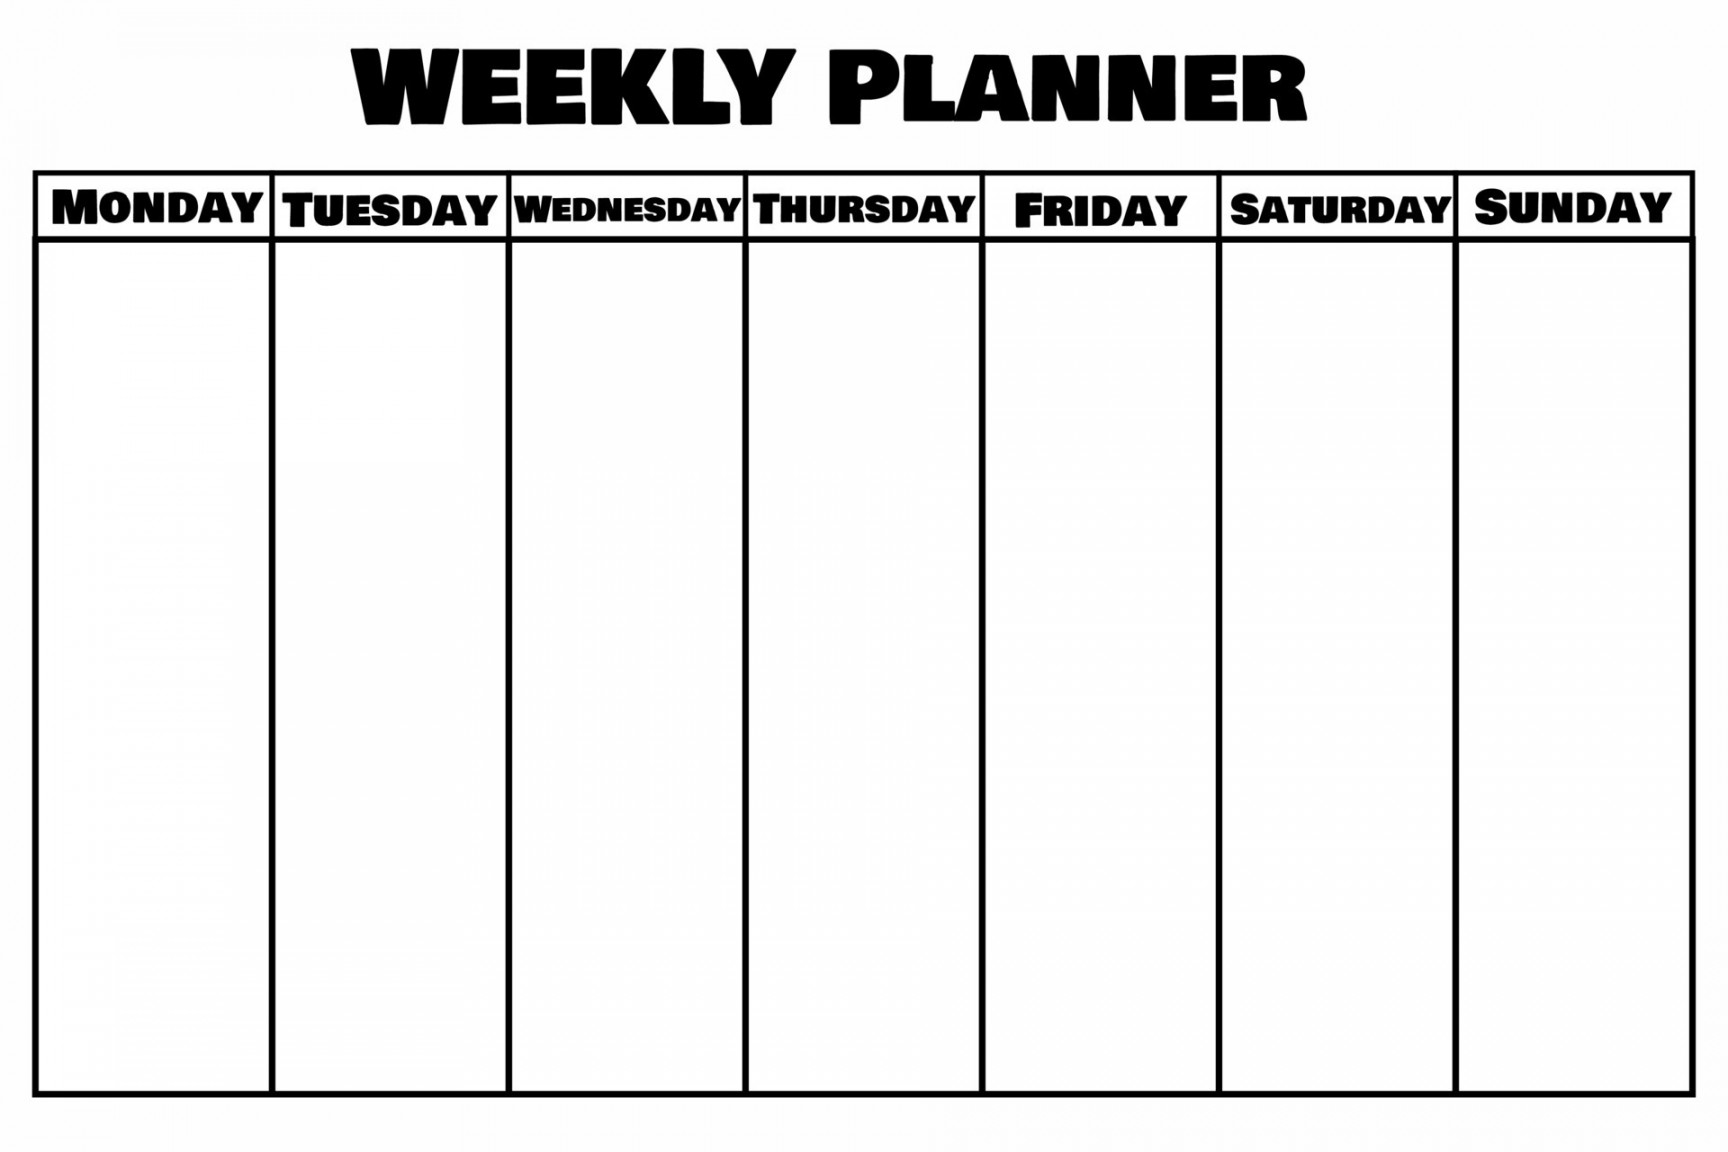 Blank weekly planner.Calendar template